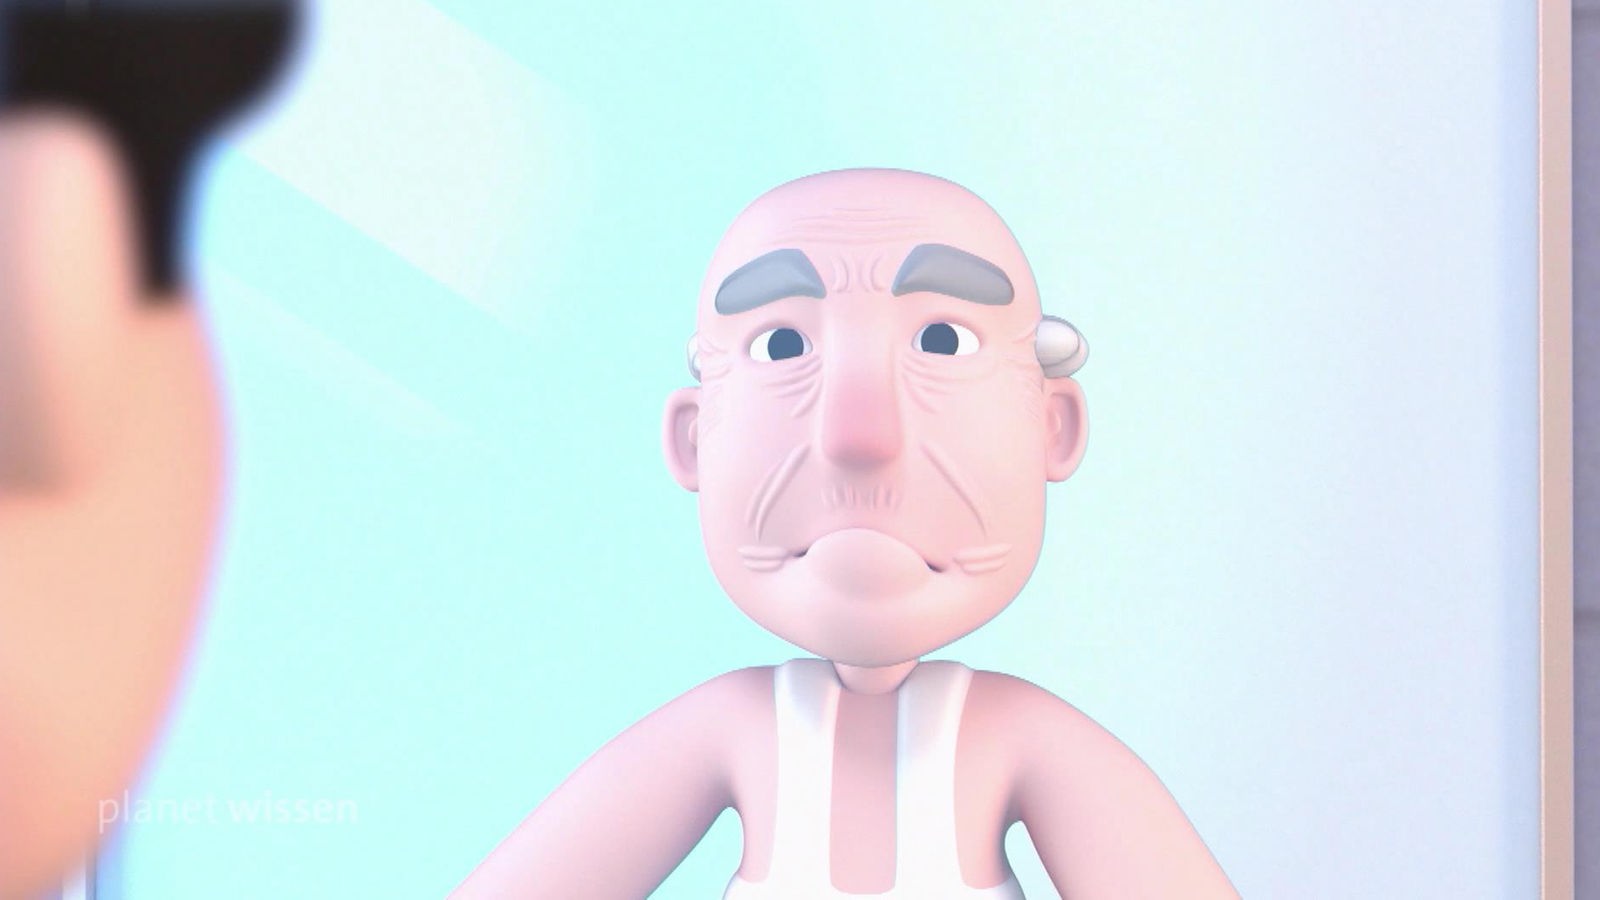 Animationsgrafik: Ein schwarzhaariger Mann steht vor einem Spiegel, in dem sich sein Ego als alter Mann zeigt.